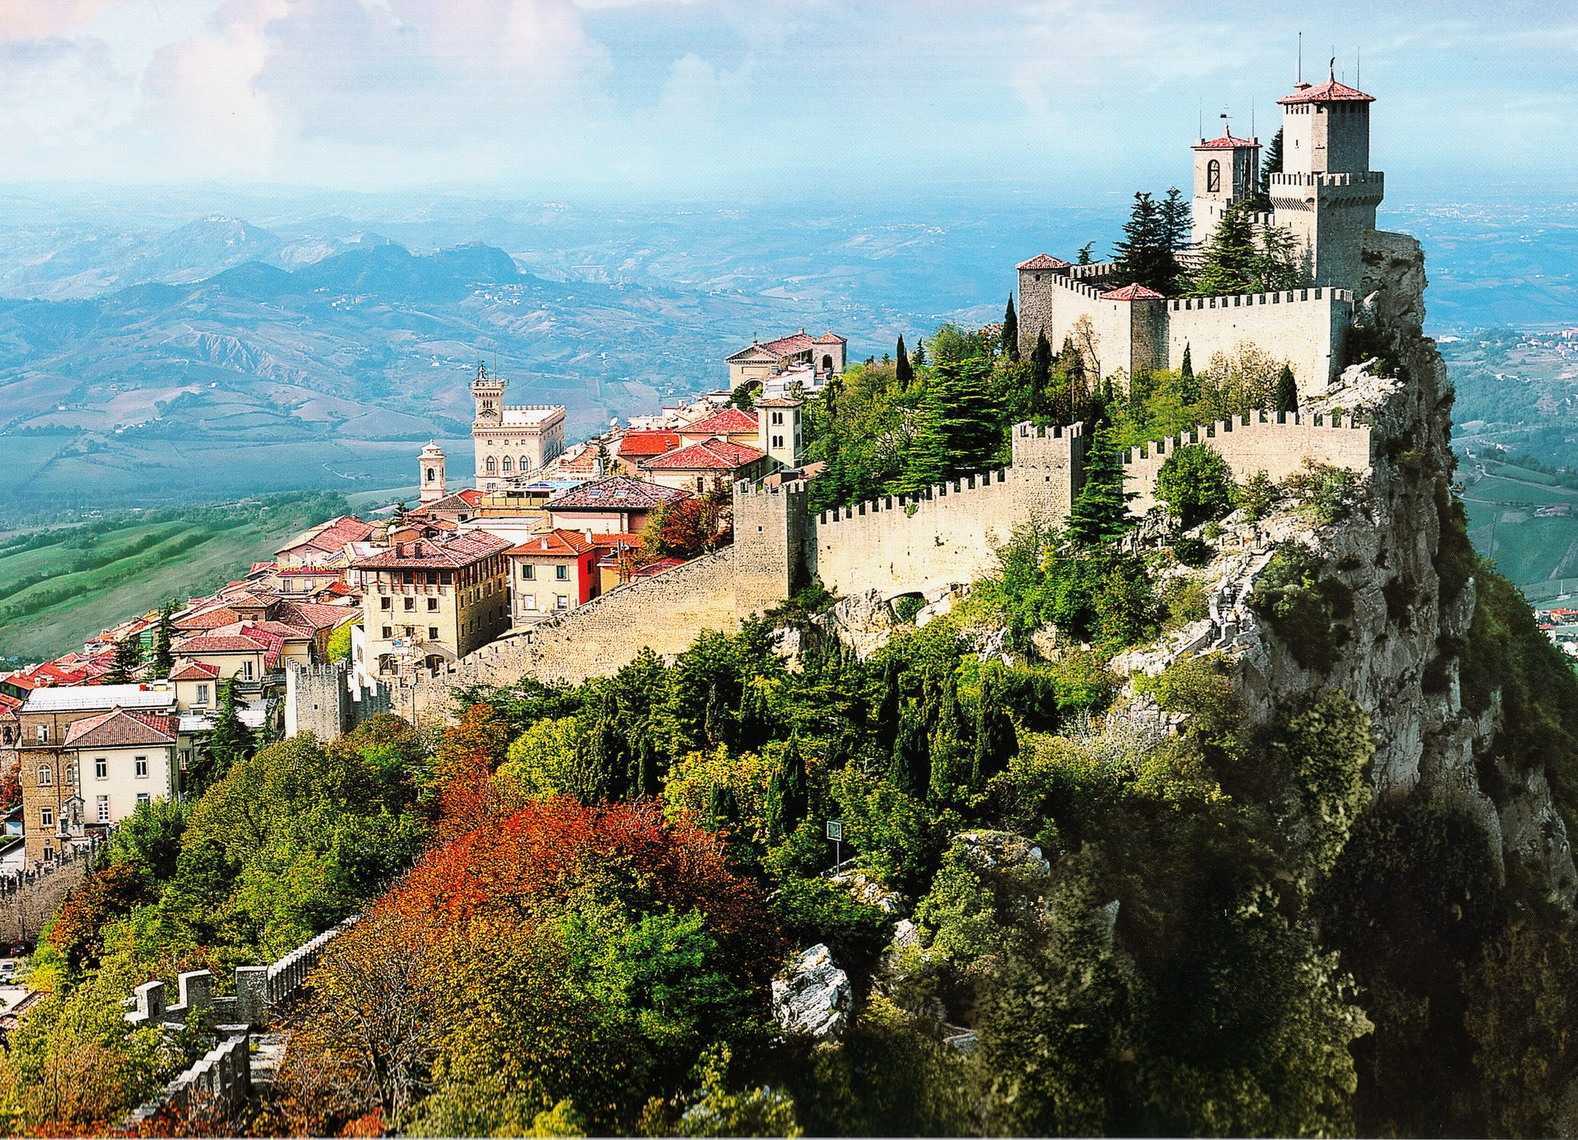 В Южной Европе, на территории Италии расположено одно из самых маленьких государств мира - Республика Сан-Марино Несмотря на довольно скромные размеры площадь Сан-Марино составляет всего 61,2 квкм, страна знаменита своими достопримечательностями и красиве